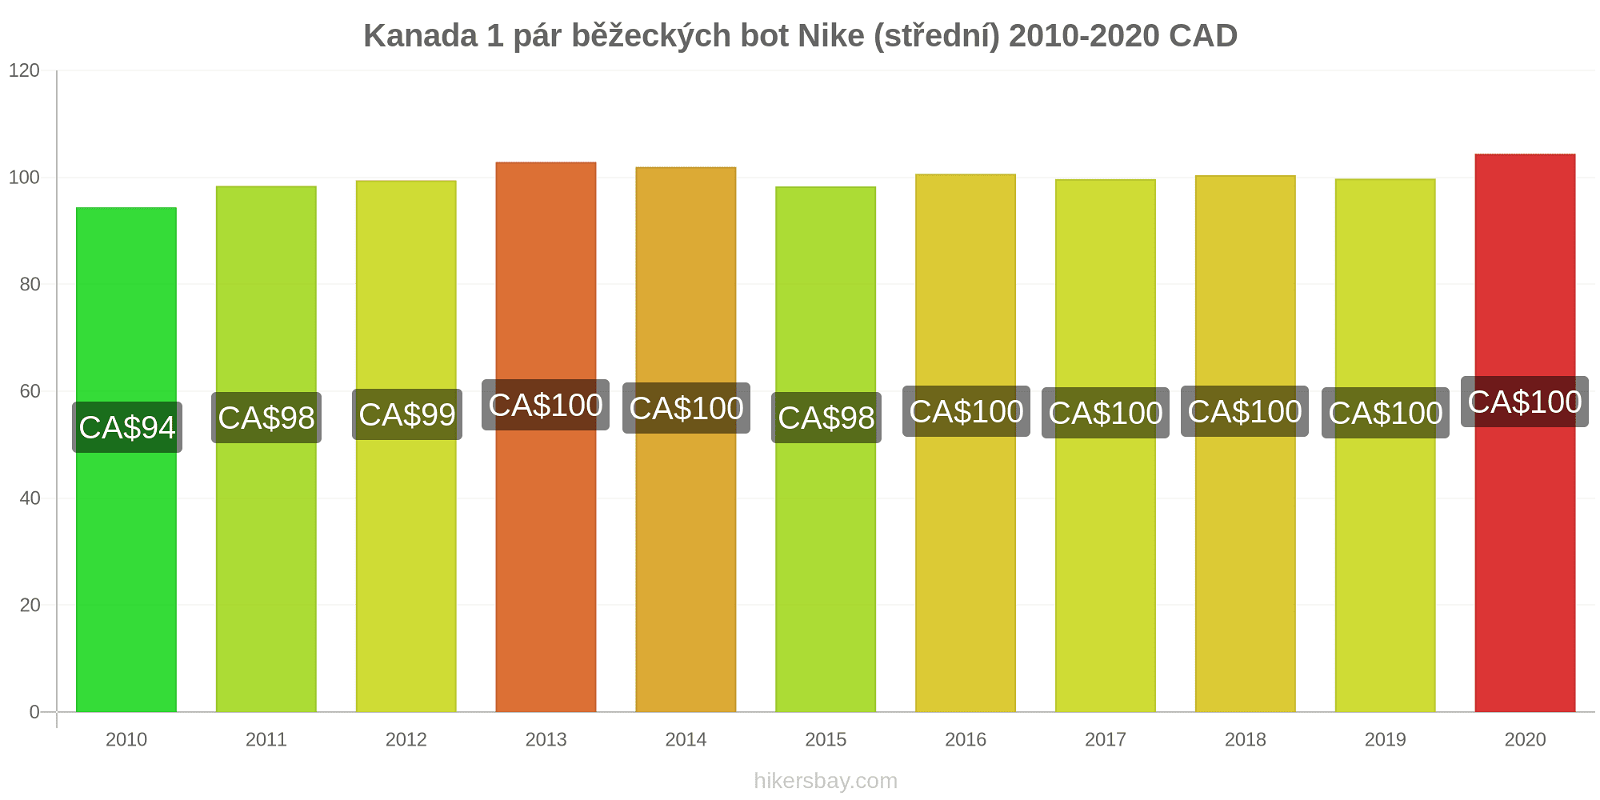 Kanada změny cen 1 pár běžeckých bot Nike (střední) hikersbay.com